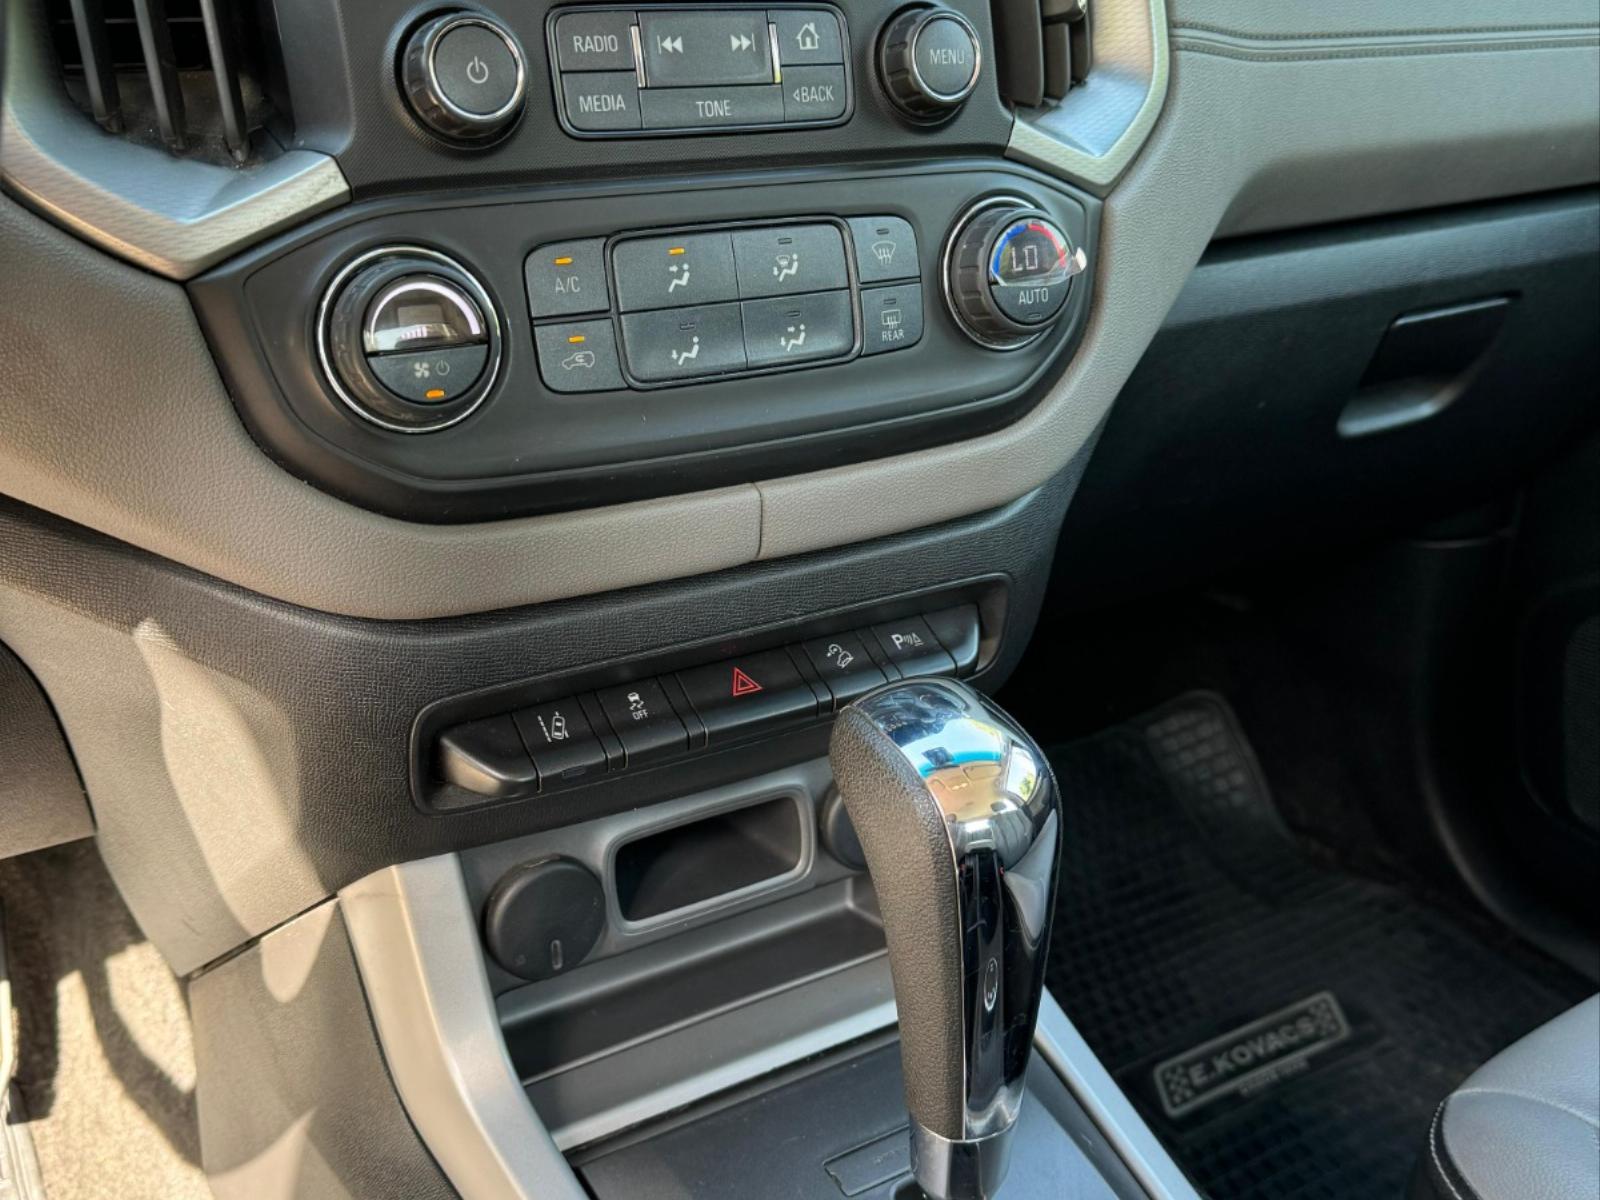 CHEVROLET COLORADO LTZ 2.8 TD 4WD AT 2019  - FULL MOTOR